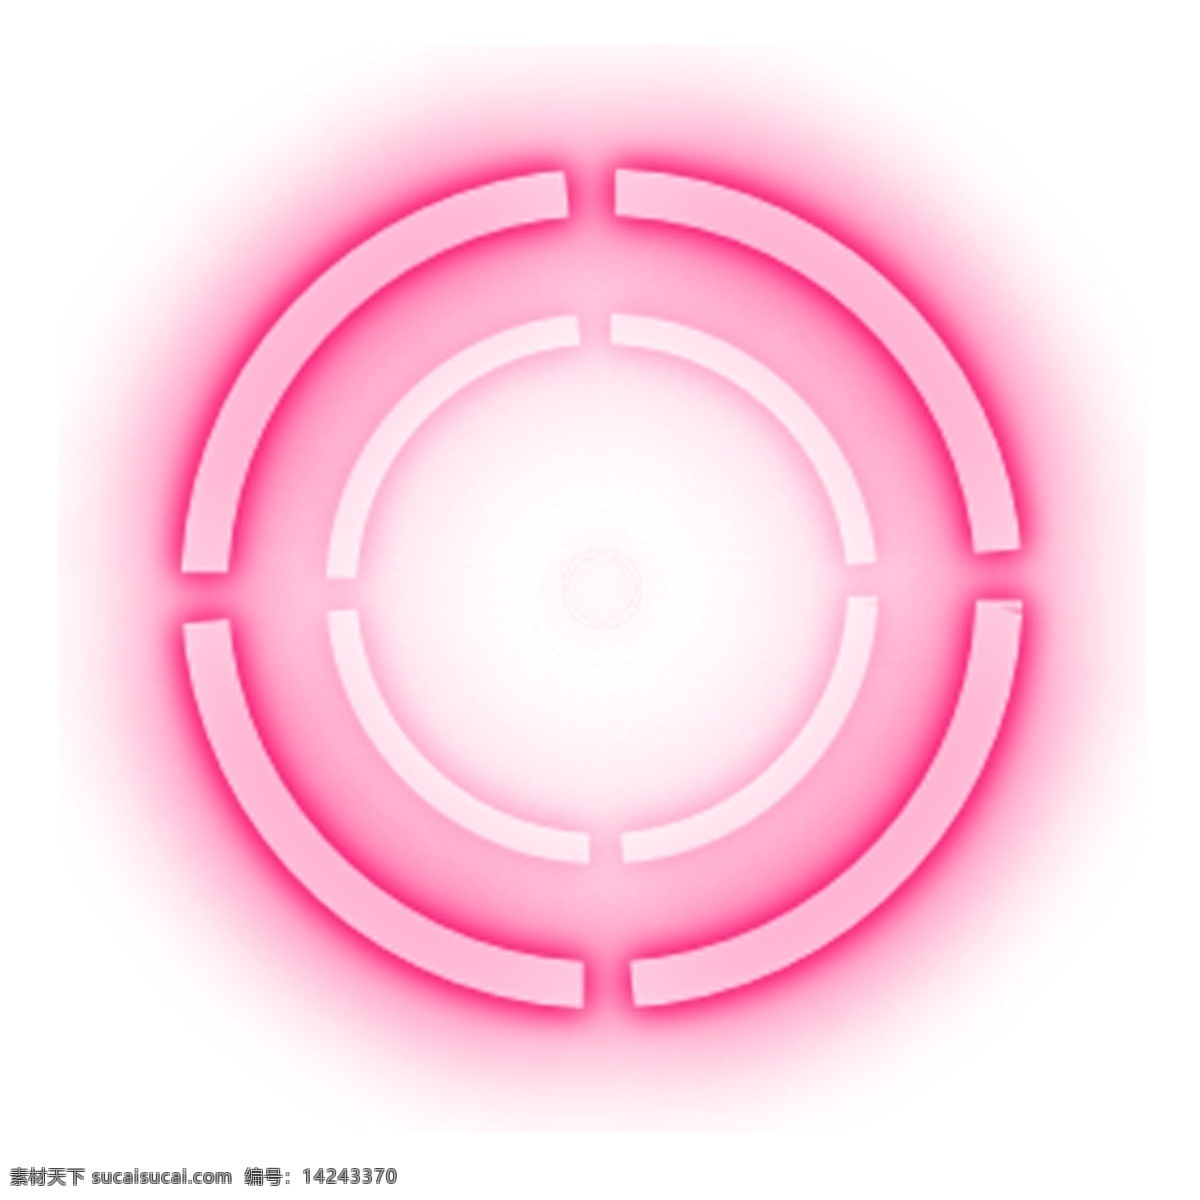 粉红色 霓虹 圆环 创意 科技感 设计素材